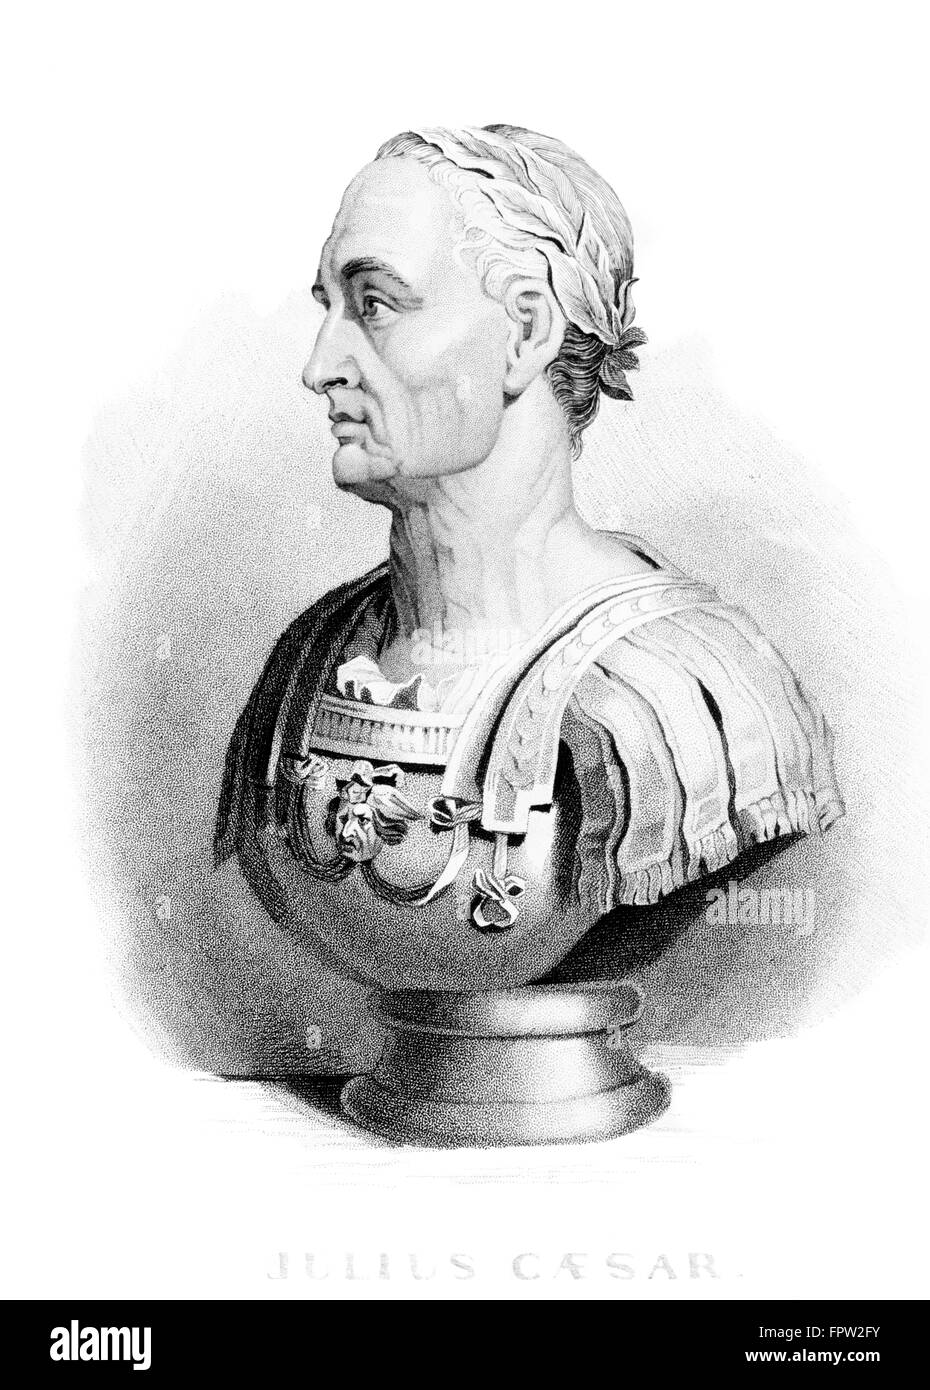 Buste GAIUS JULIUS CAESAR EMPIRE ROMAIN Profil général dictateur assassiné plus de 44 BCE LE 15 MARS PRENEZ GARDE AUX IDES DE MARS Banque D'Images